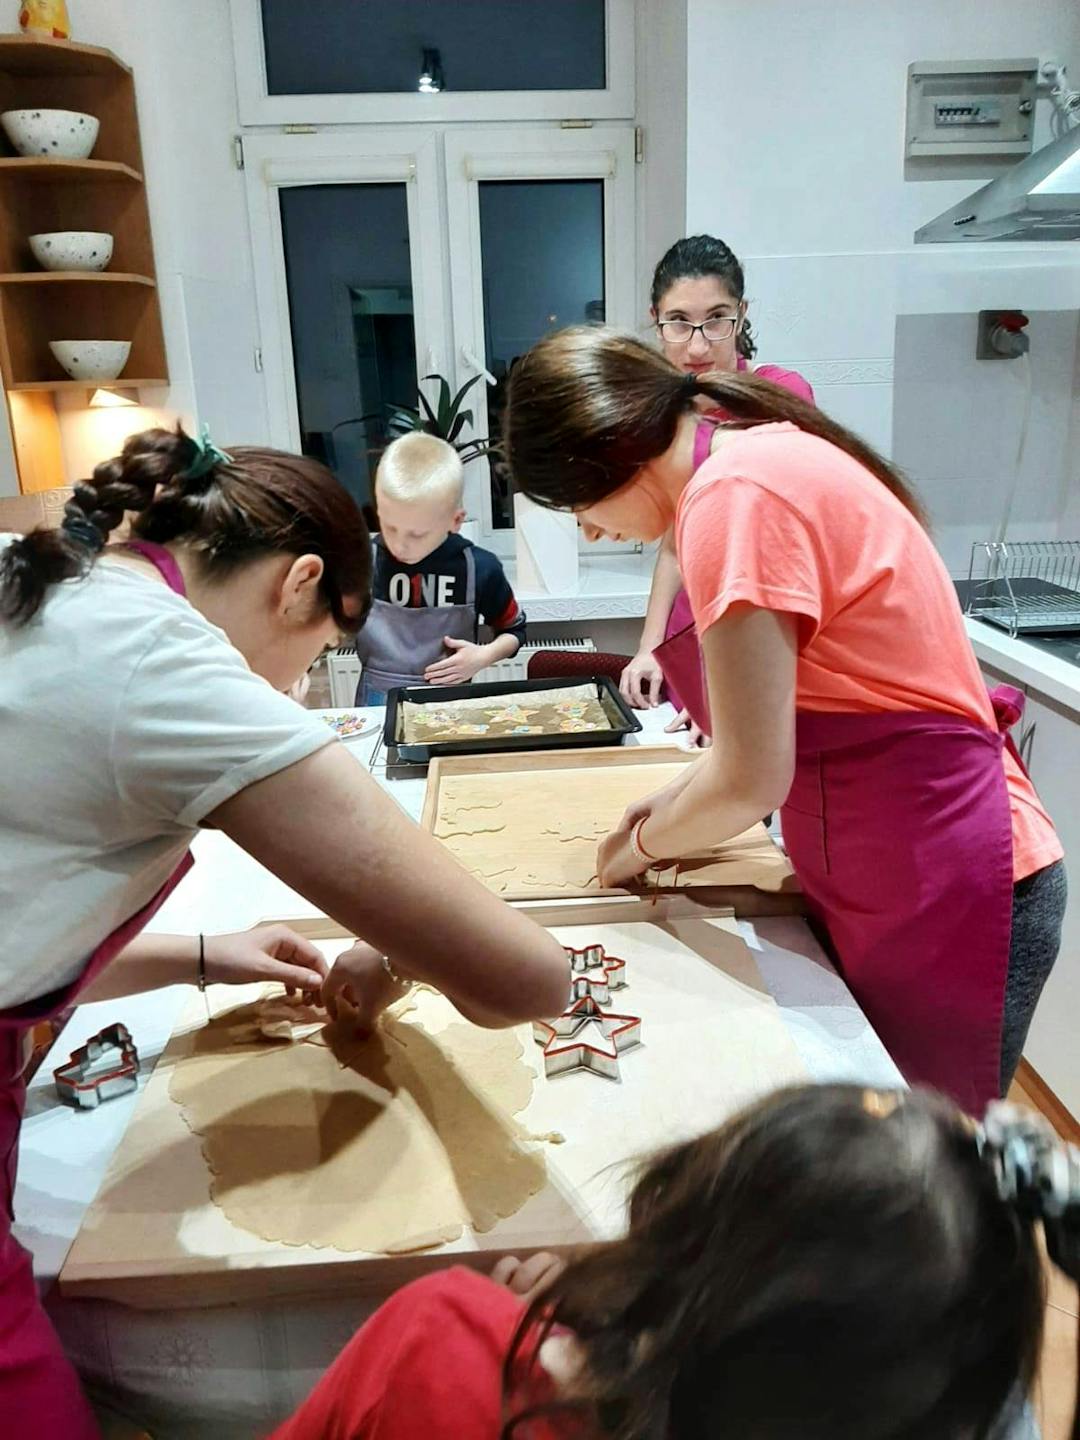 Kulinarne eksperymenty | Uczennice wycinają ciastka foremkami.jpg